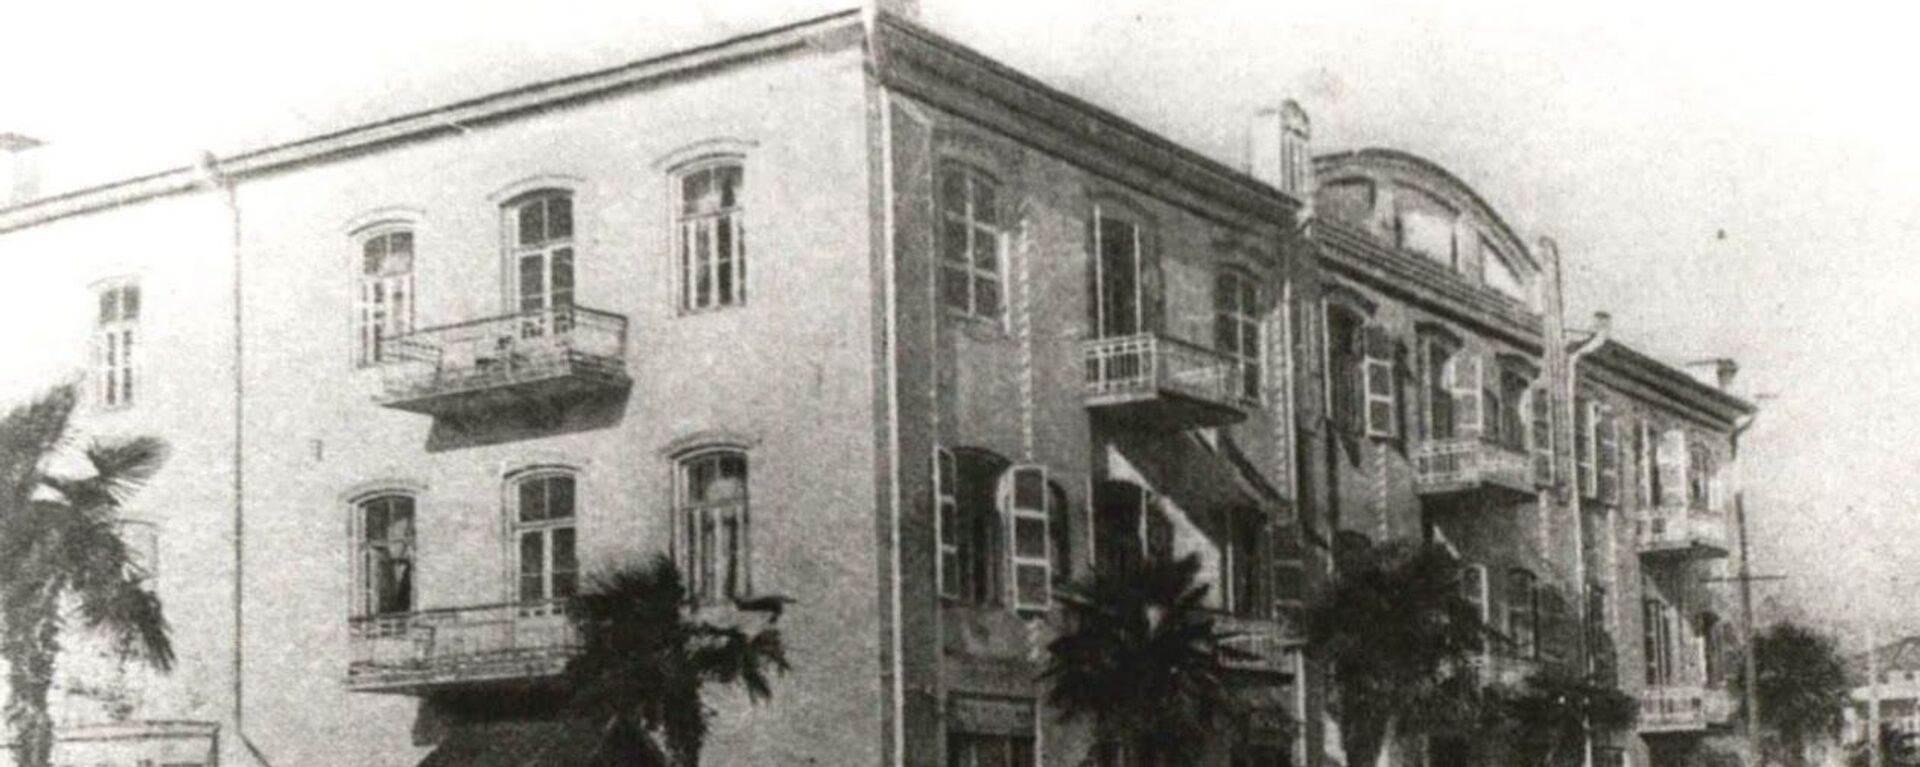 Здание абхазского драмтеатра в 1952 году - Sputnik Абхазия, 1920, 17.02.2019